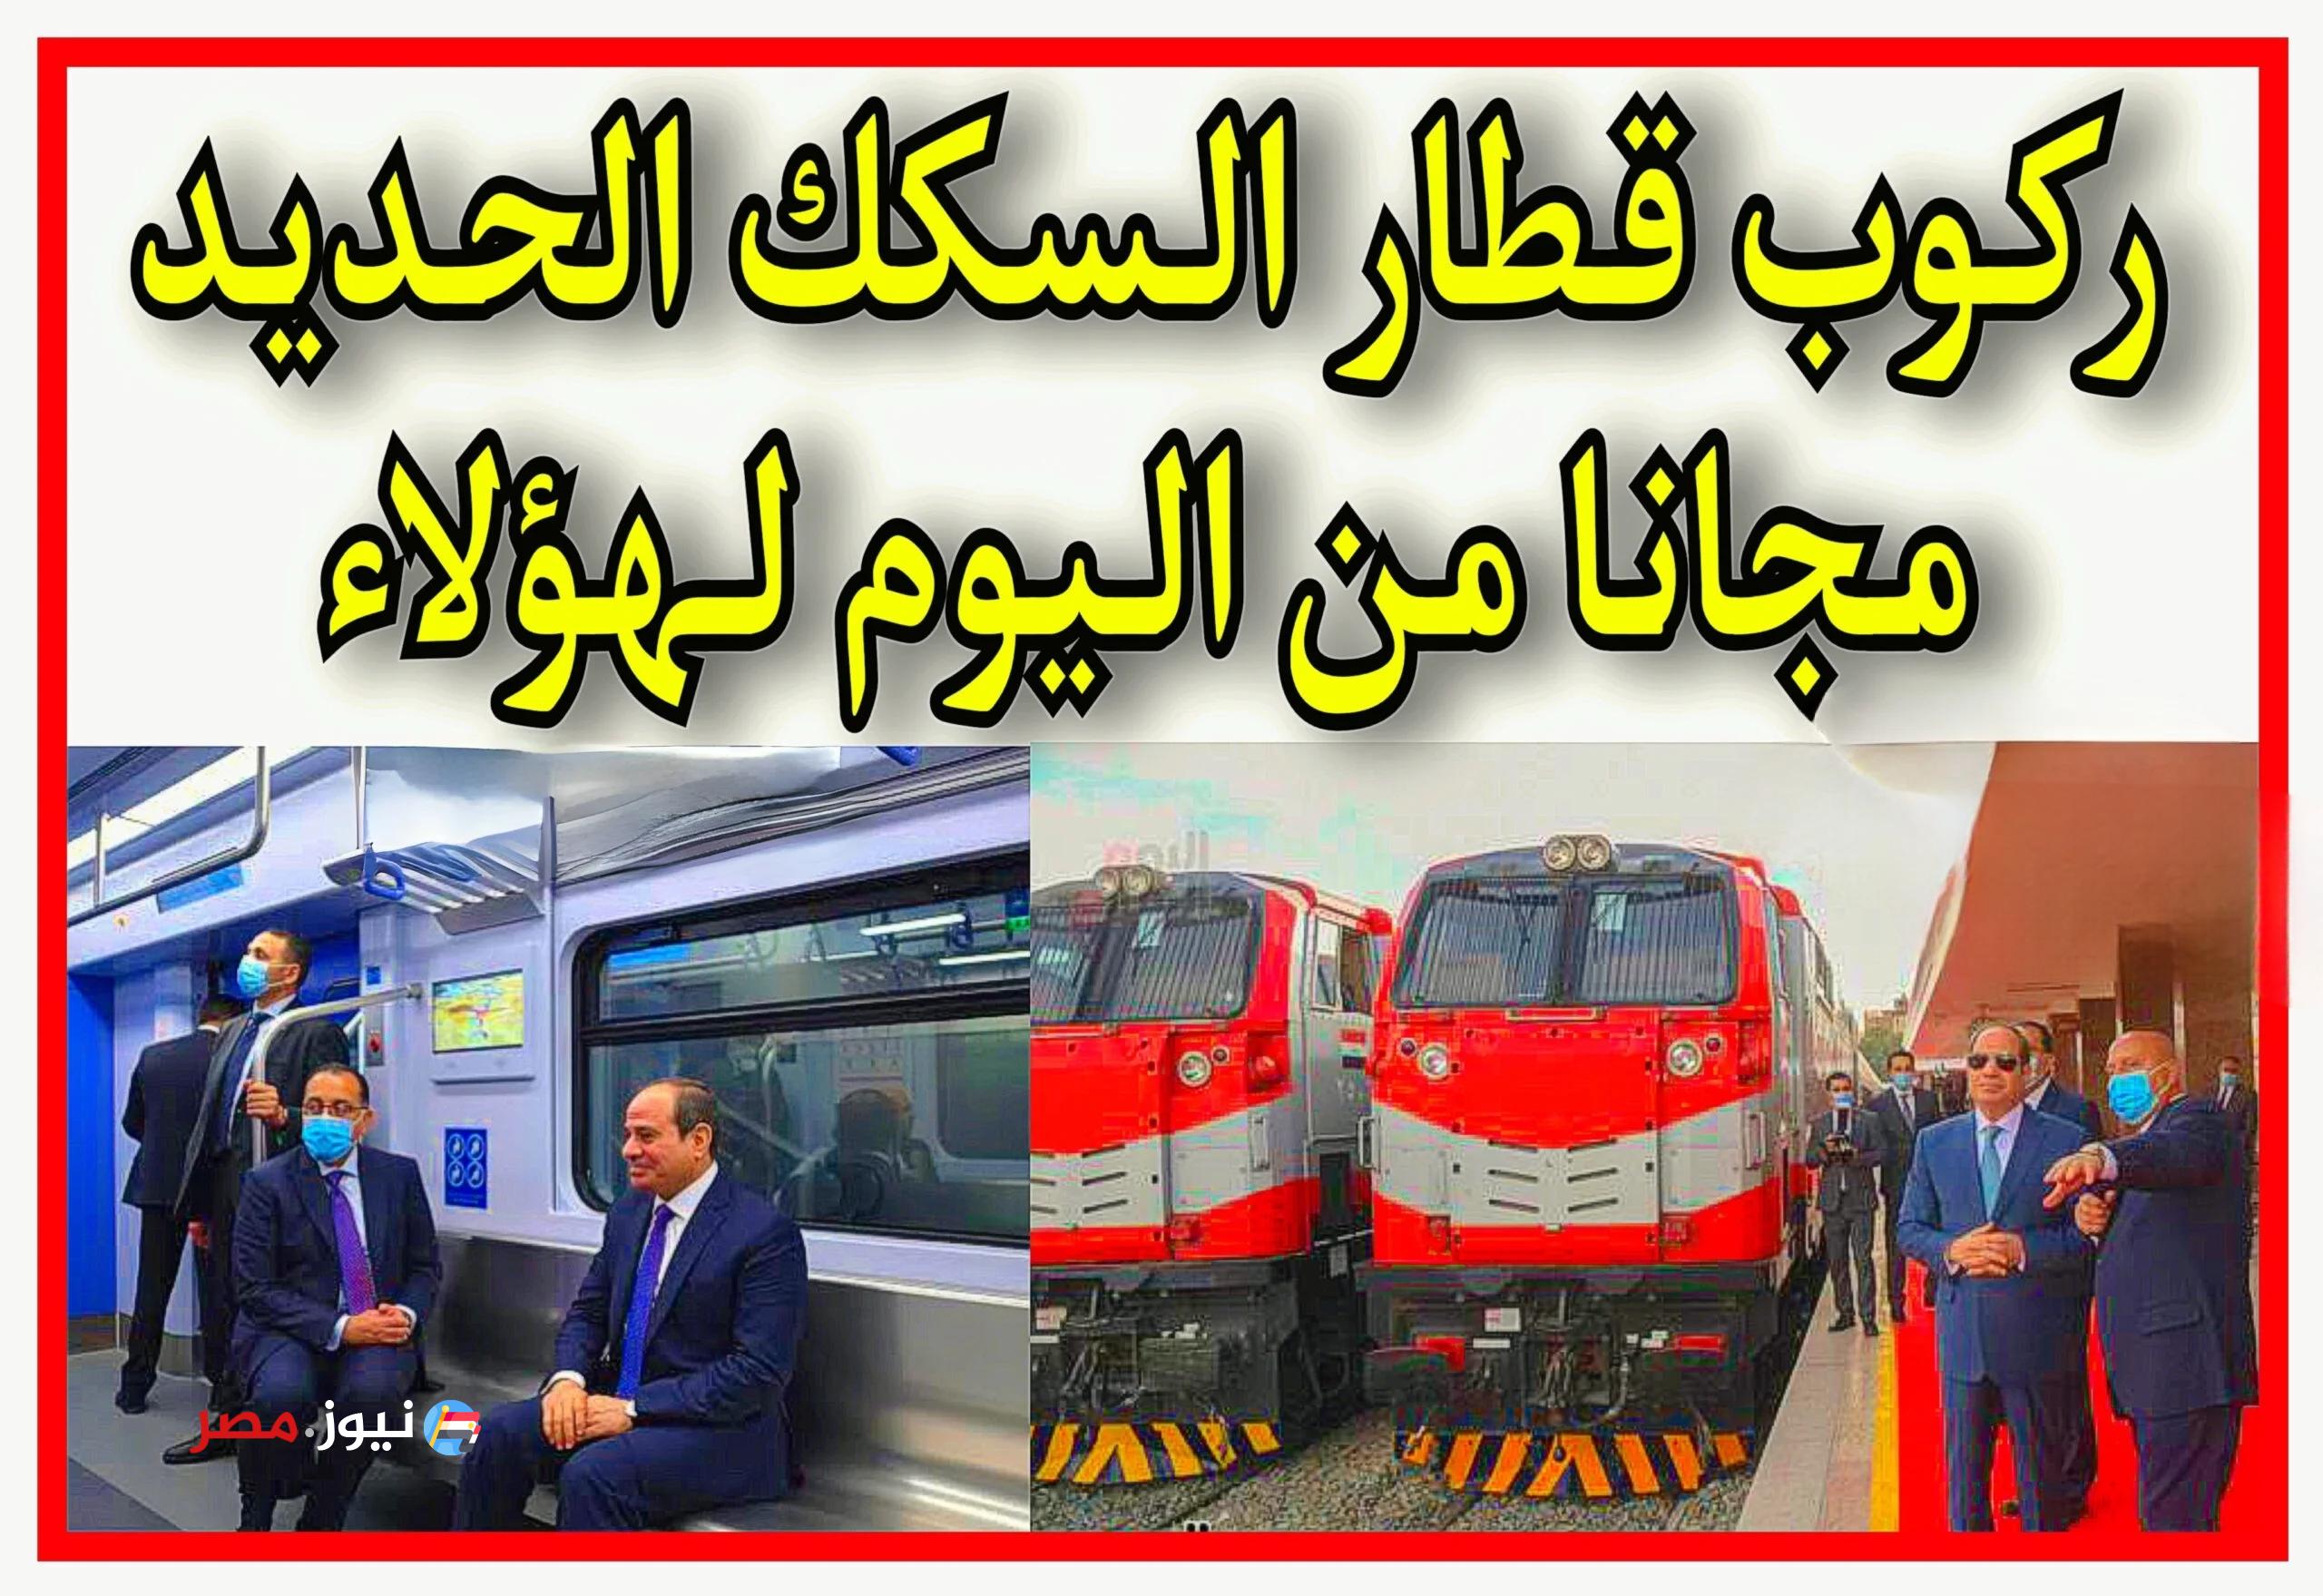 الحكومة بتشبرق على المواطنين... ركوب القطار مجانا لهذه الفئات من اليوم.. شوف نفسهم منهم ولا لا..!!